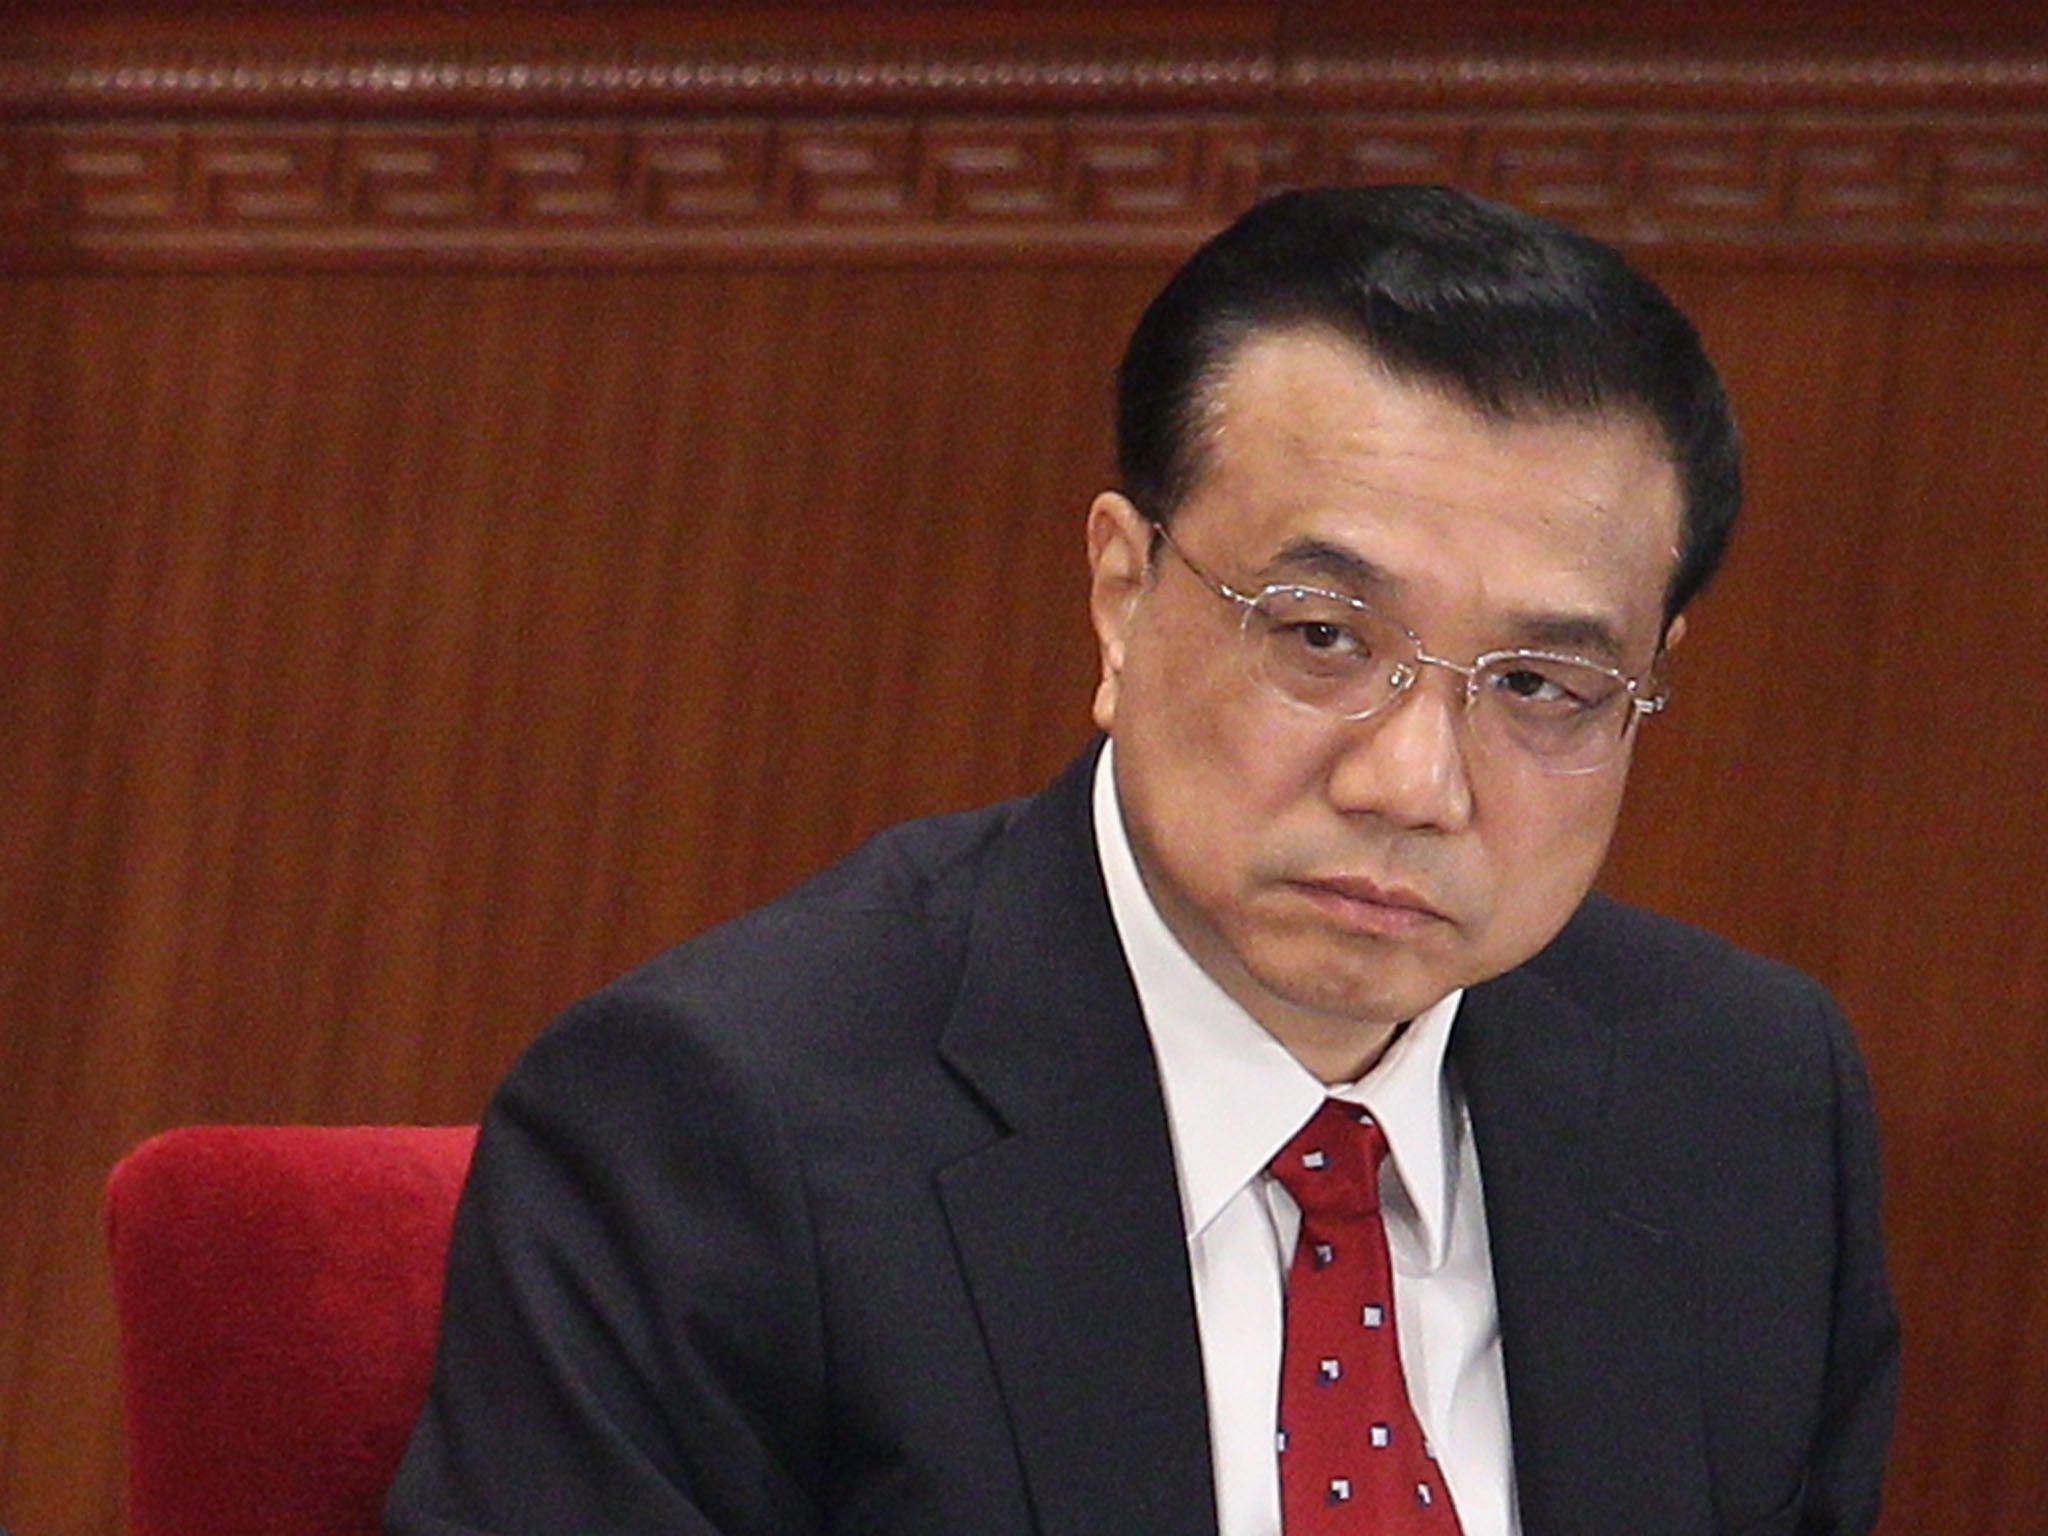 Li Keqiang, set to become China's premier